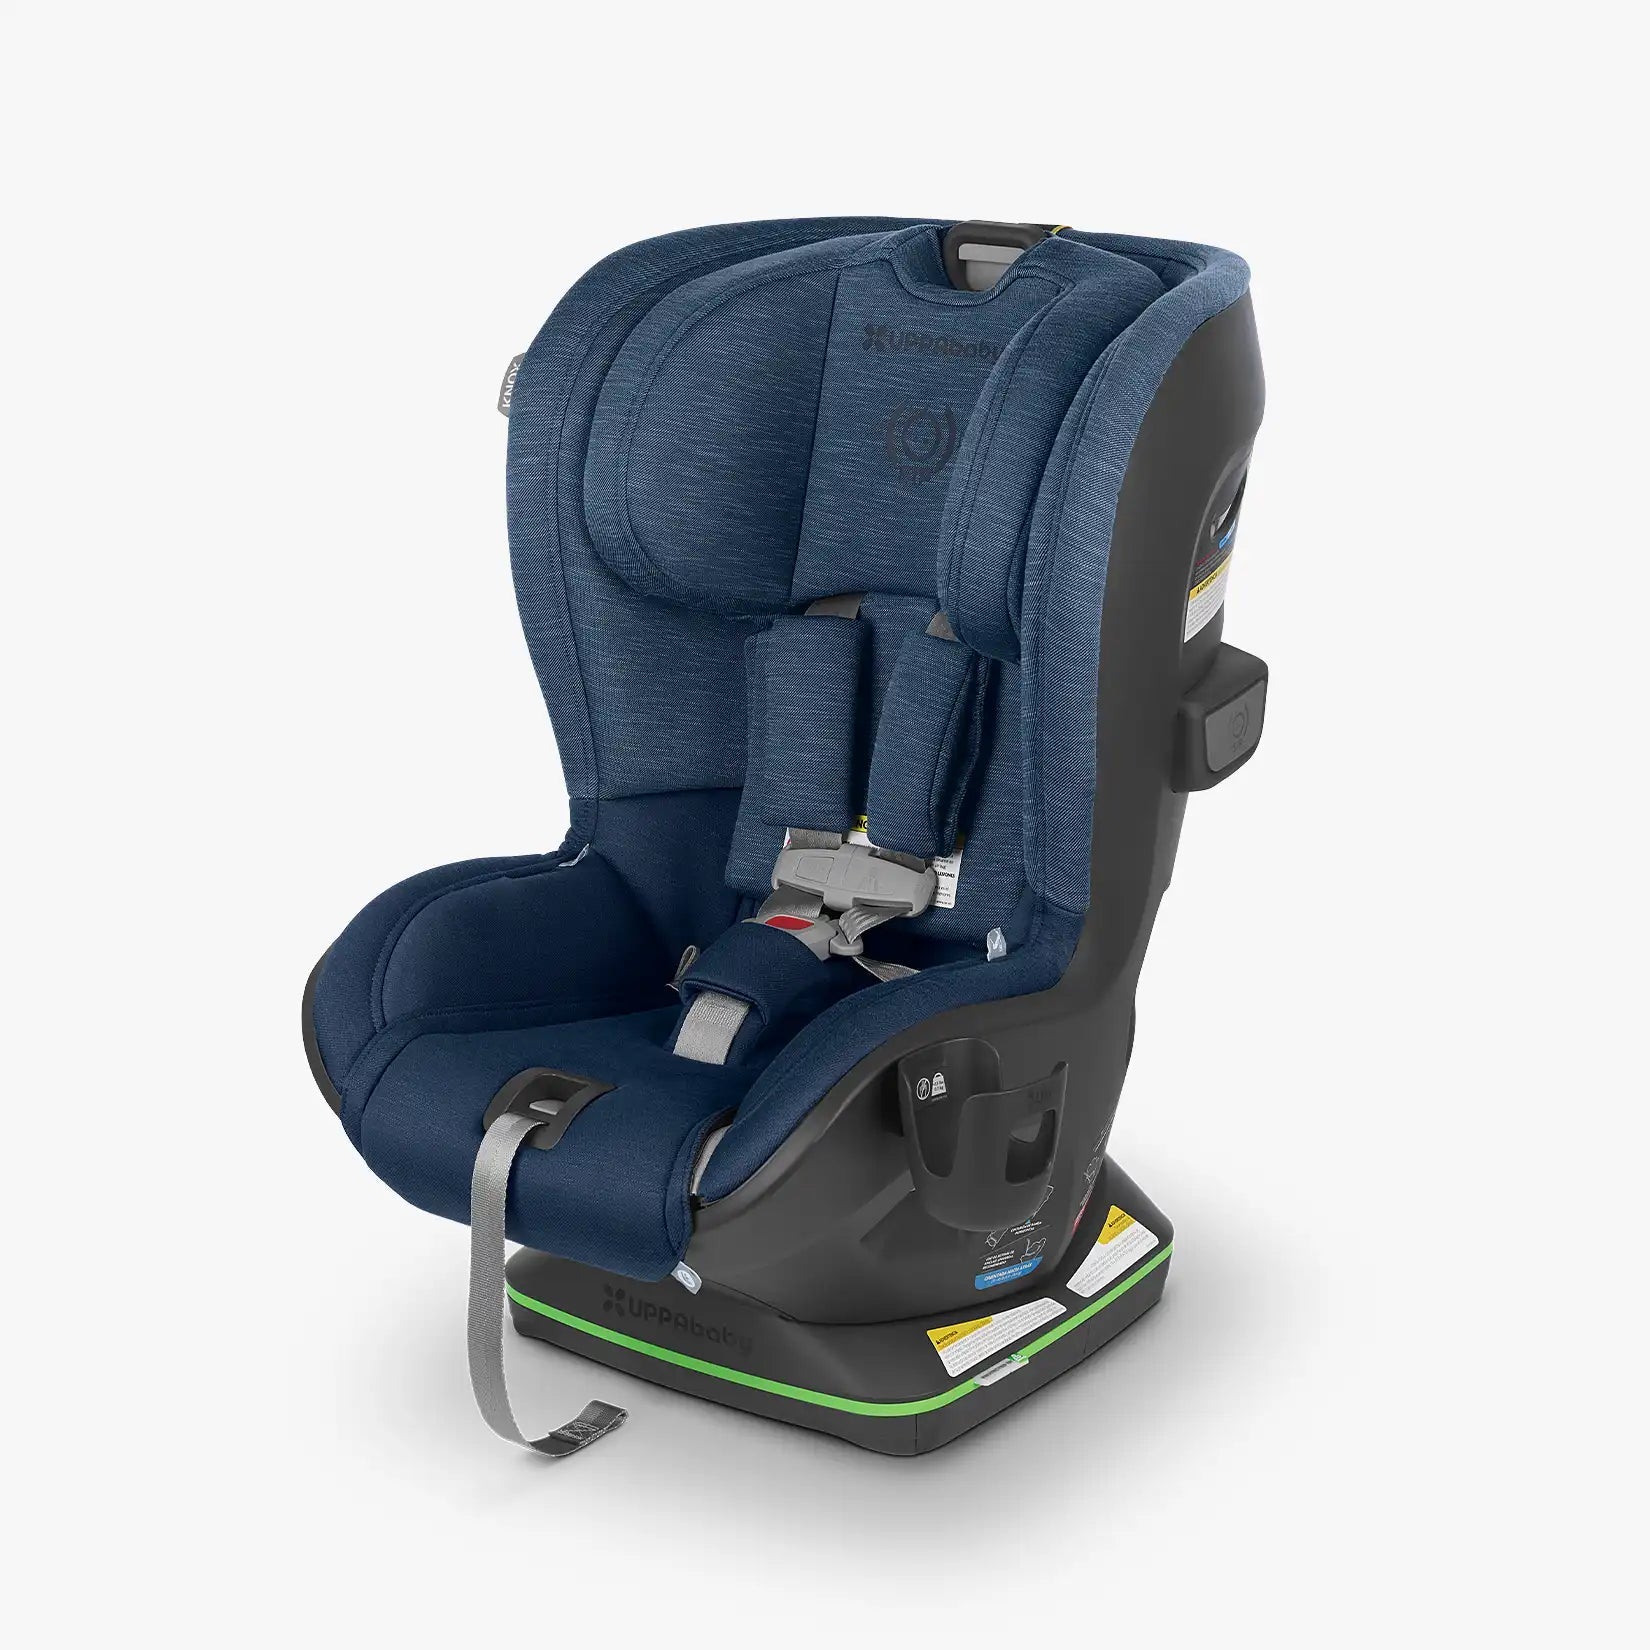 UPPAbaby KNOX Convertible Car Seat - ANB Baby -810030096177$300 - $500